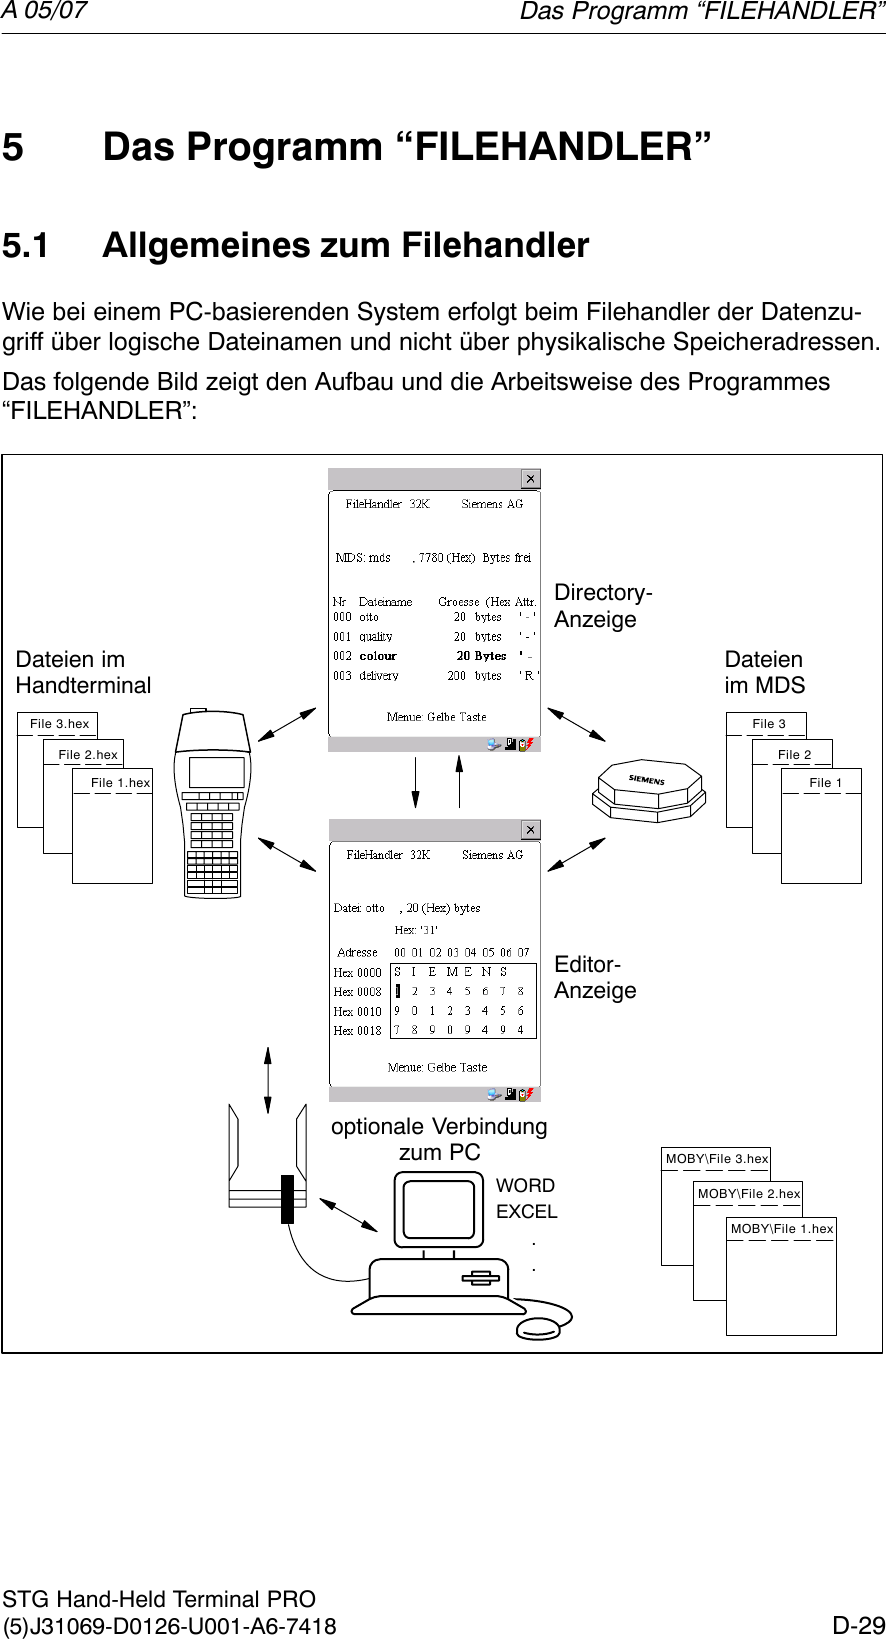 A 05/07D-29STG Hand-Held Terminal PRO(5)J31069-D0126-U001-A6-74185 Das Programm “FILEHANDLER”5.1 Allgemeines zum FilehandlerWie bei einem PC-basierenden System erfolgt beim Filehandler der Datenzu-griff über logische Dateinamen und nicht über physikalische Speicheradressen.Das folgende Bild zeigt den Aufbau und die Arbeitsweise des Programmes “FILEHANDLER”:File 3.hexFile 2.hexFile 1.hexMOBY\File 3.hexMOBY\File 2.hexMOBY\File 1.hexoptionale Verbindungzum PCWORDEXCEL..Editor-AnzeigeDirectory-AnzeigeDateien im MDSDateien im HandterminalFile 3File 2File 1Das Programm “FILEHANDLER”